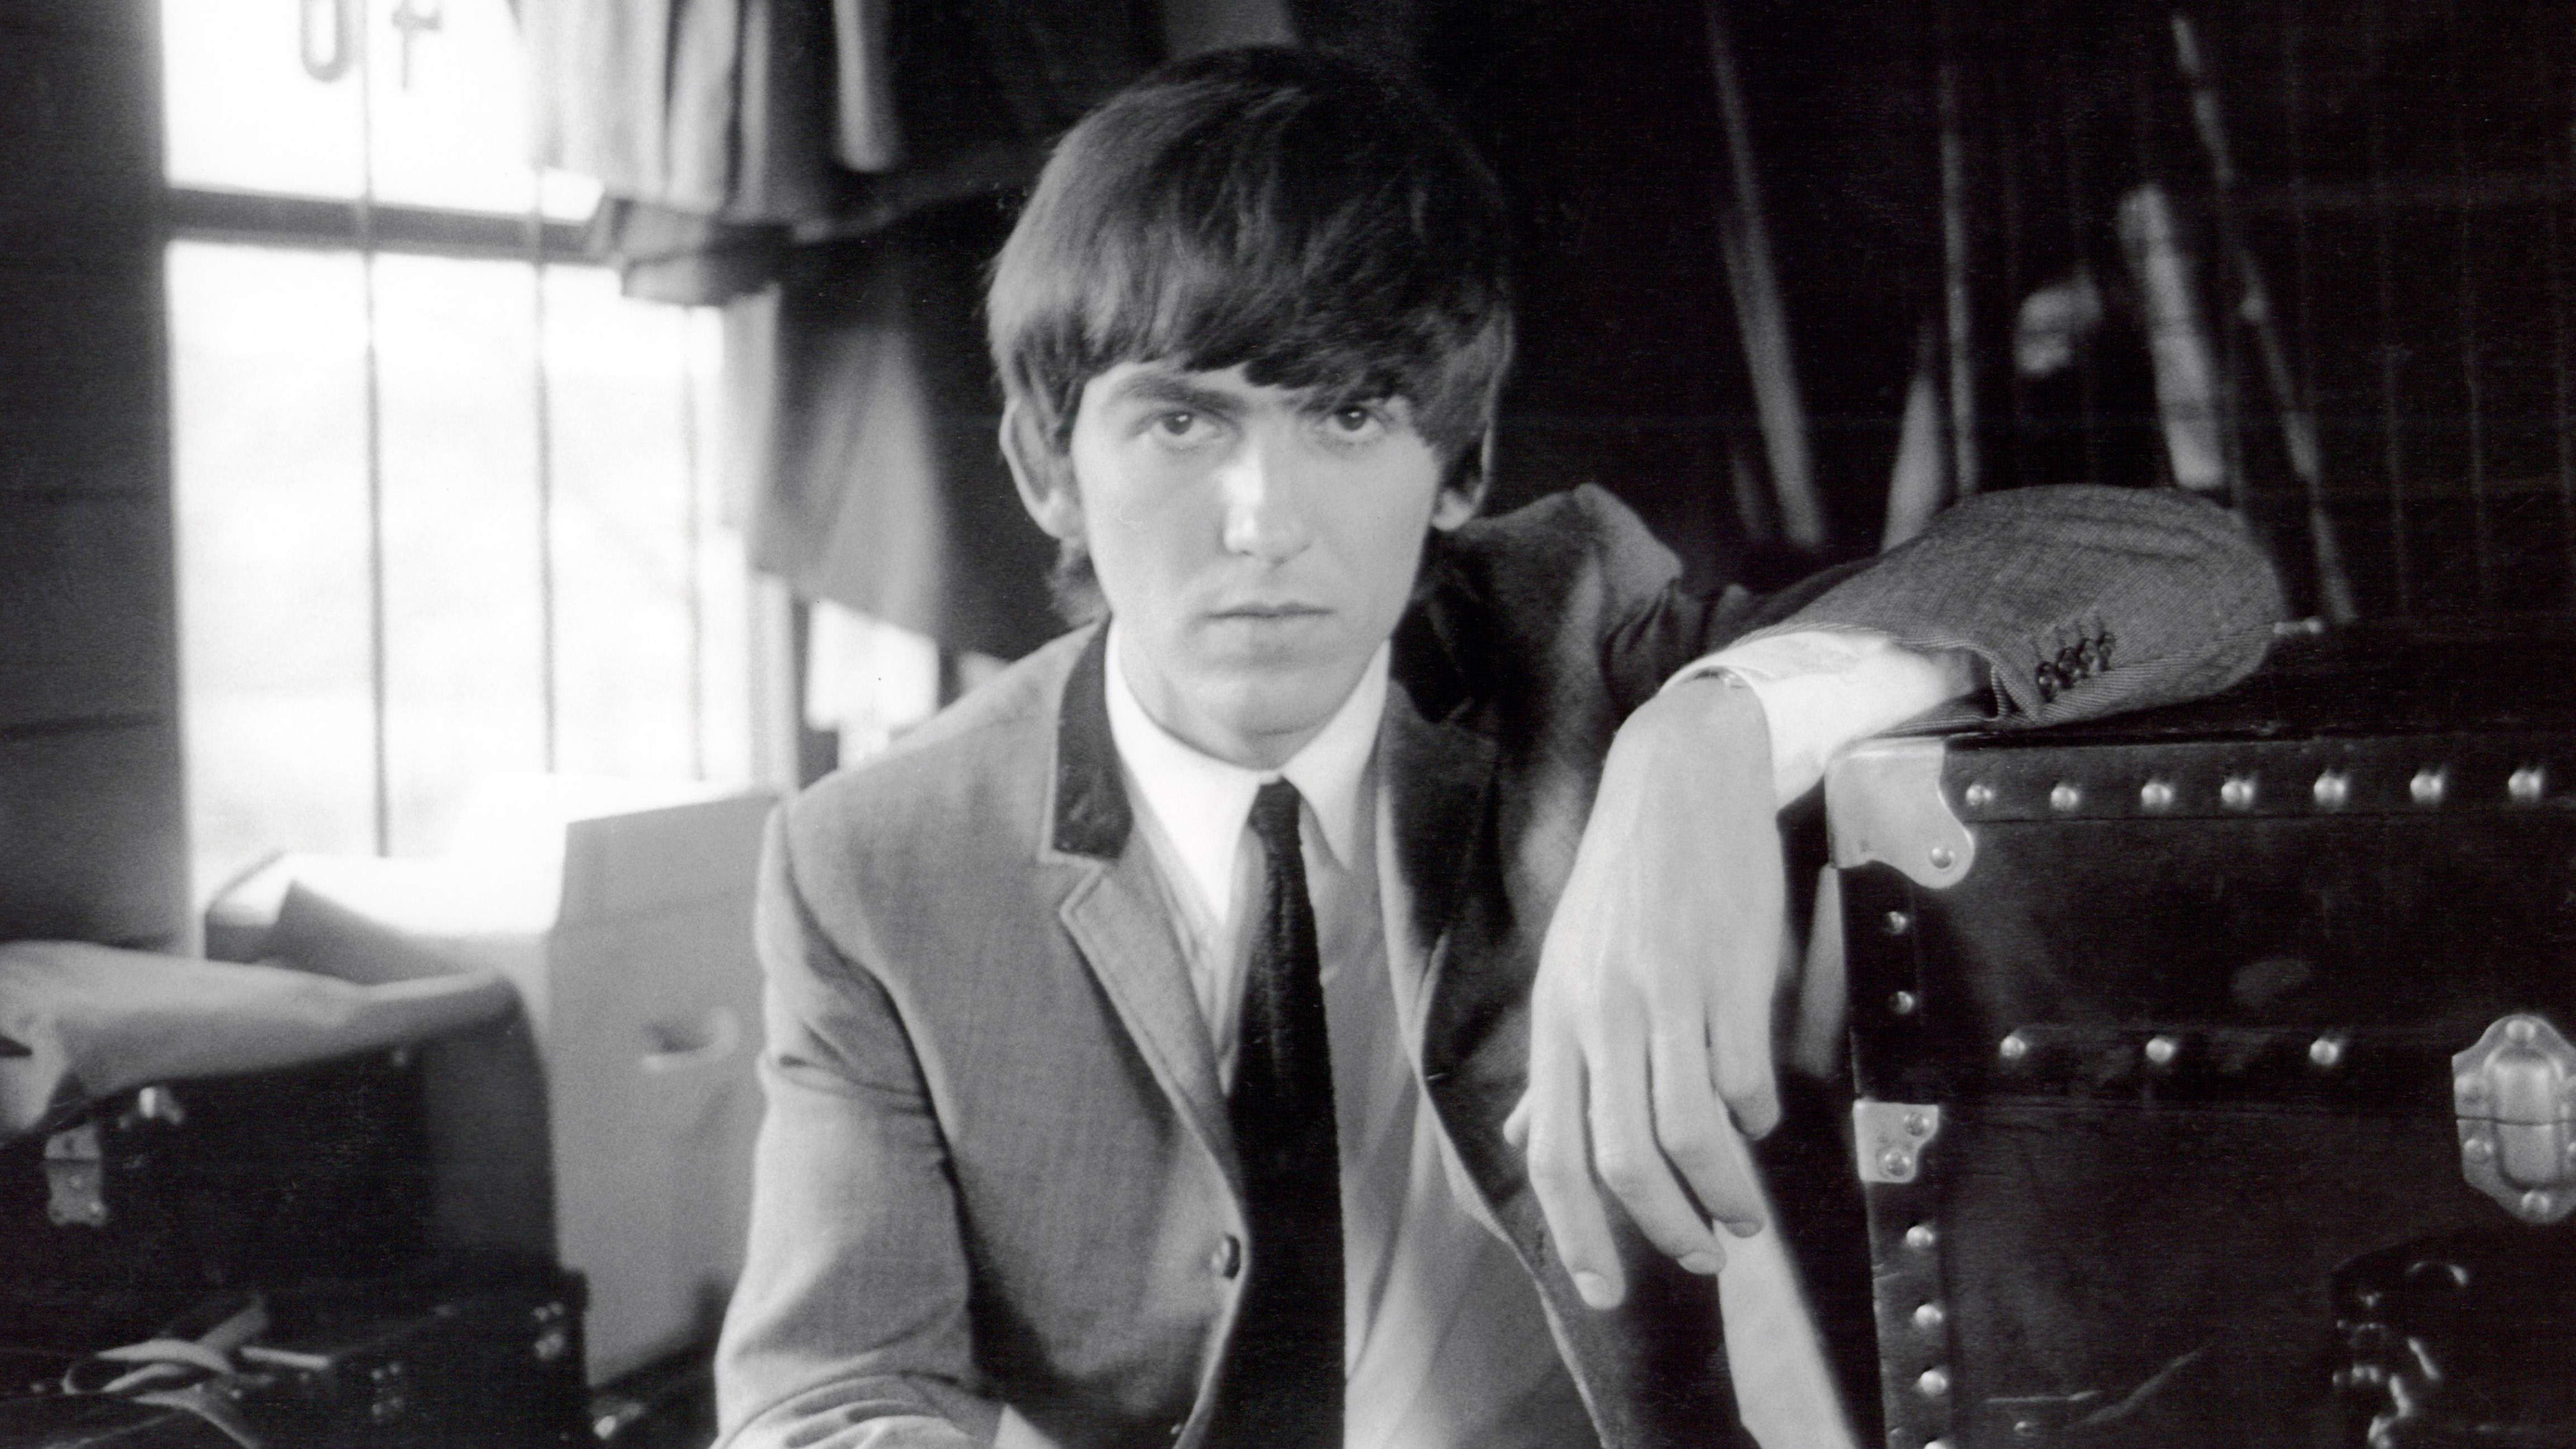 Top 10 George Harrison Beatles Songs